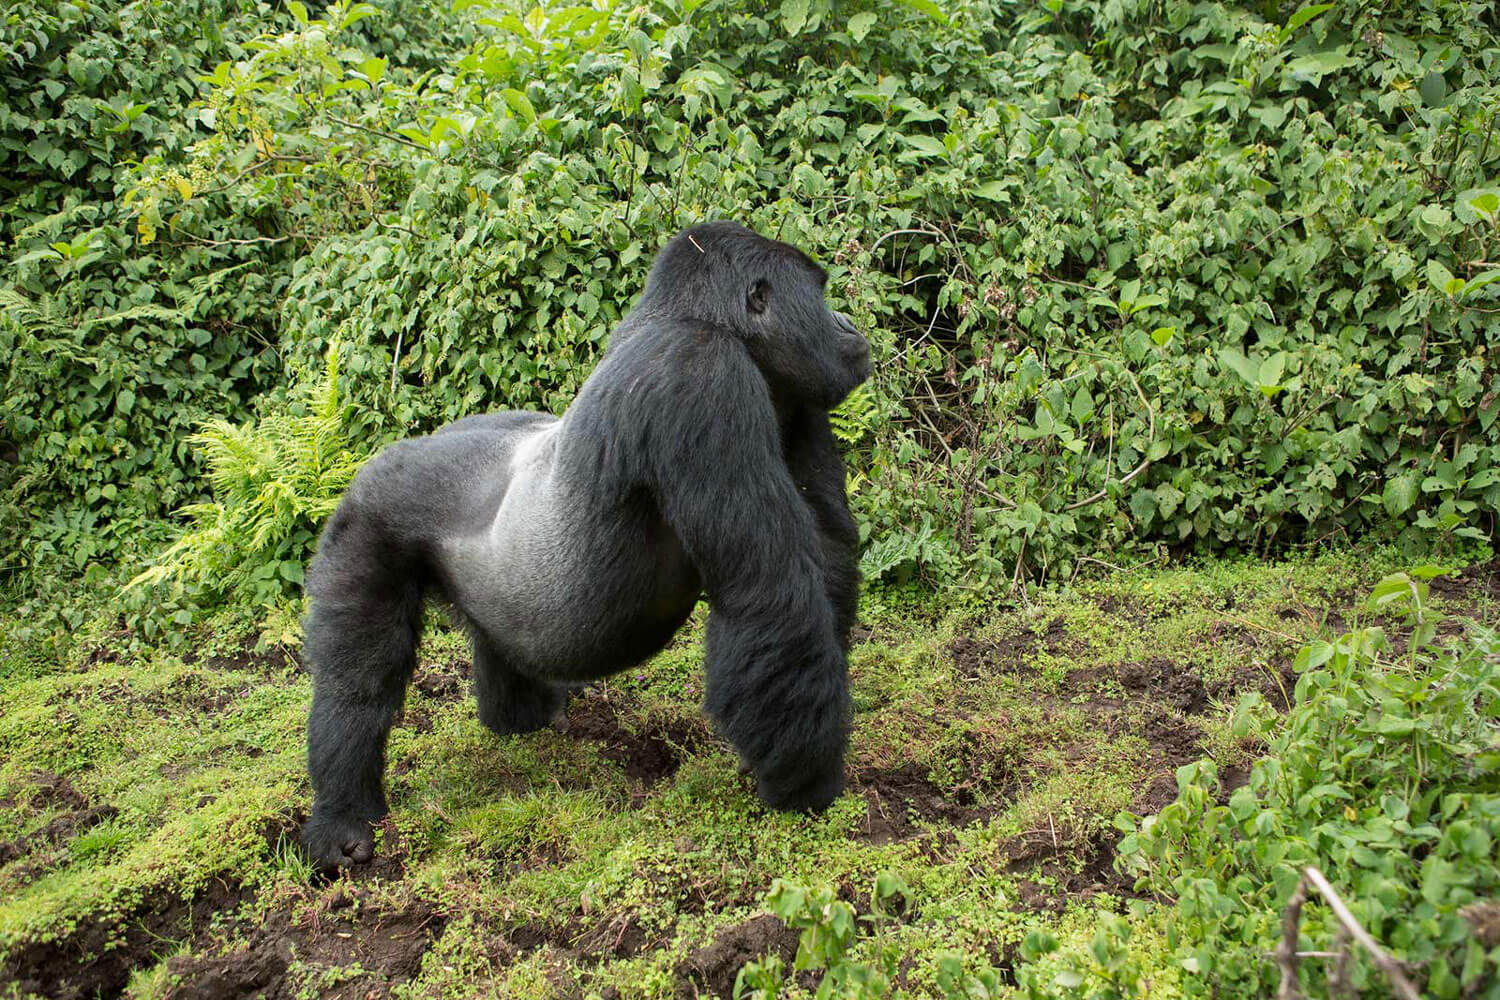 Silberrücken Gorilla in der Wildnis im Wald